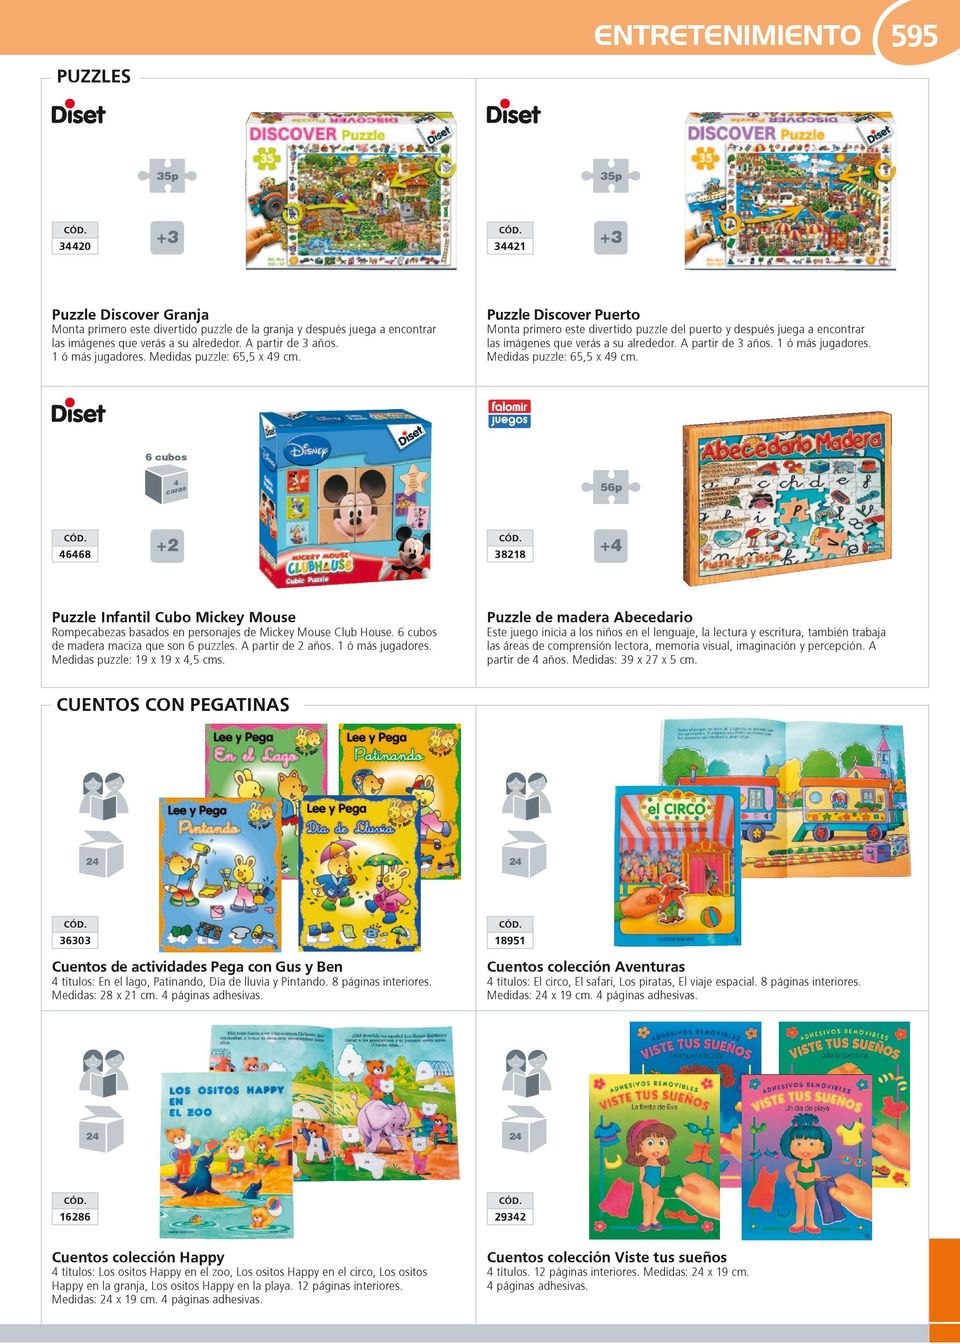 1 ó más jugadores. Medidas puzzle: 65,5 x 49 cm. 6 cubos 4 s cara 46468 +2 Puzzle Infantil Cubo Mickey Mouse Rompecabezas basados en personajes de Mickey Mouse Club House.